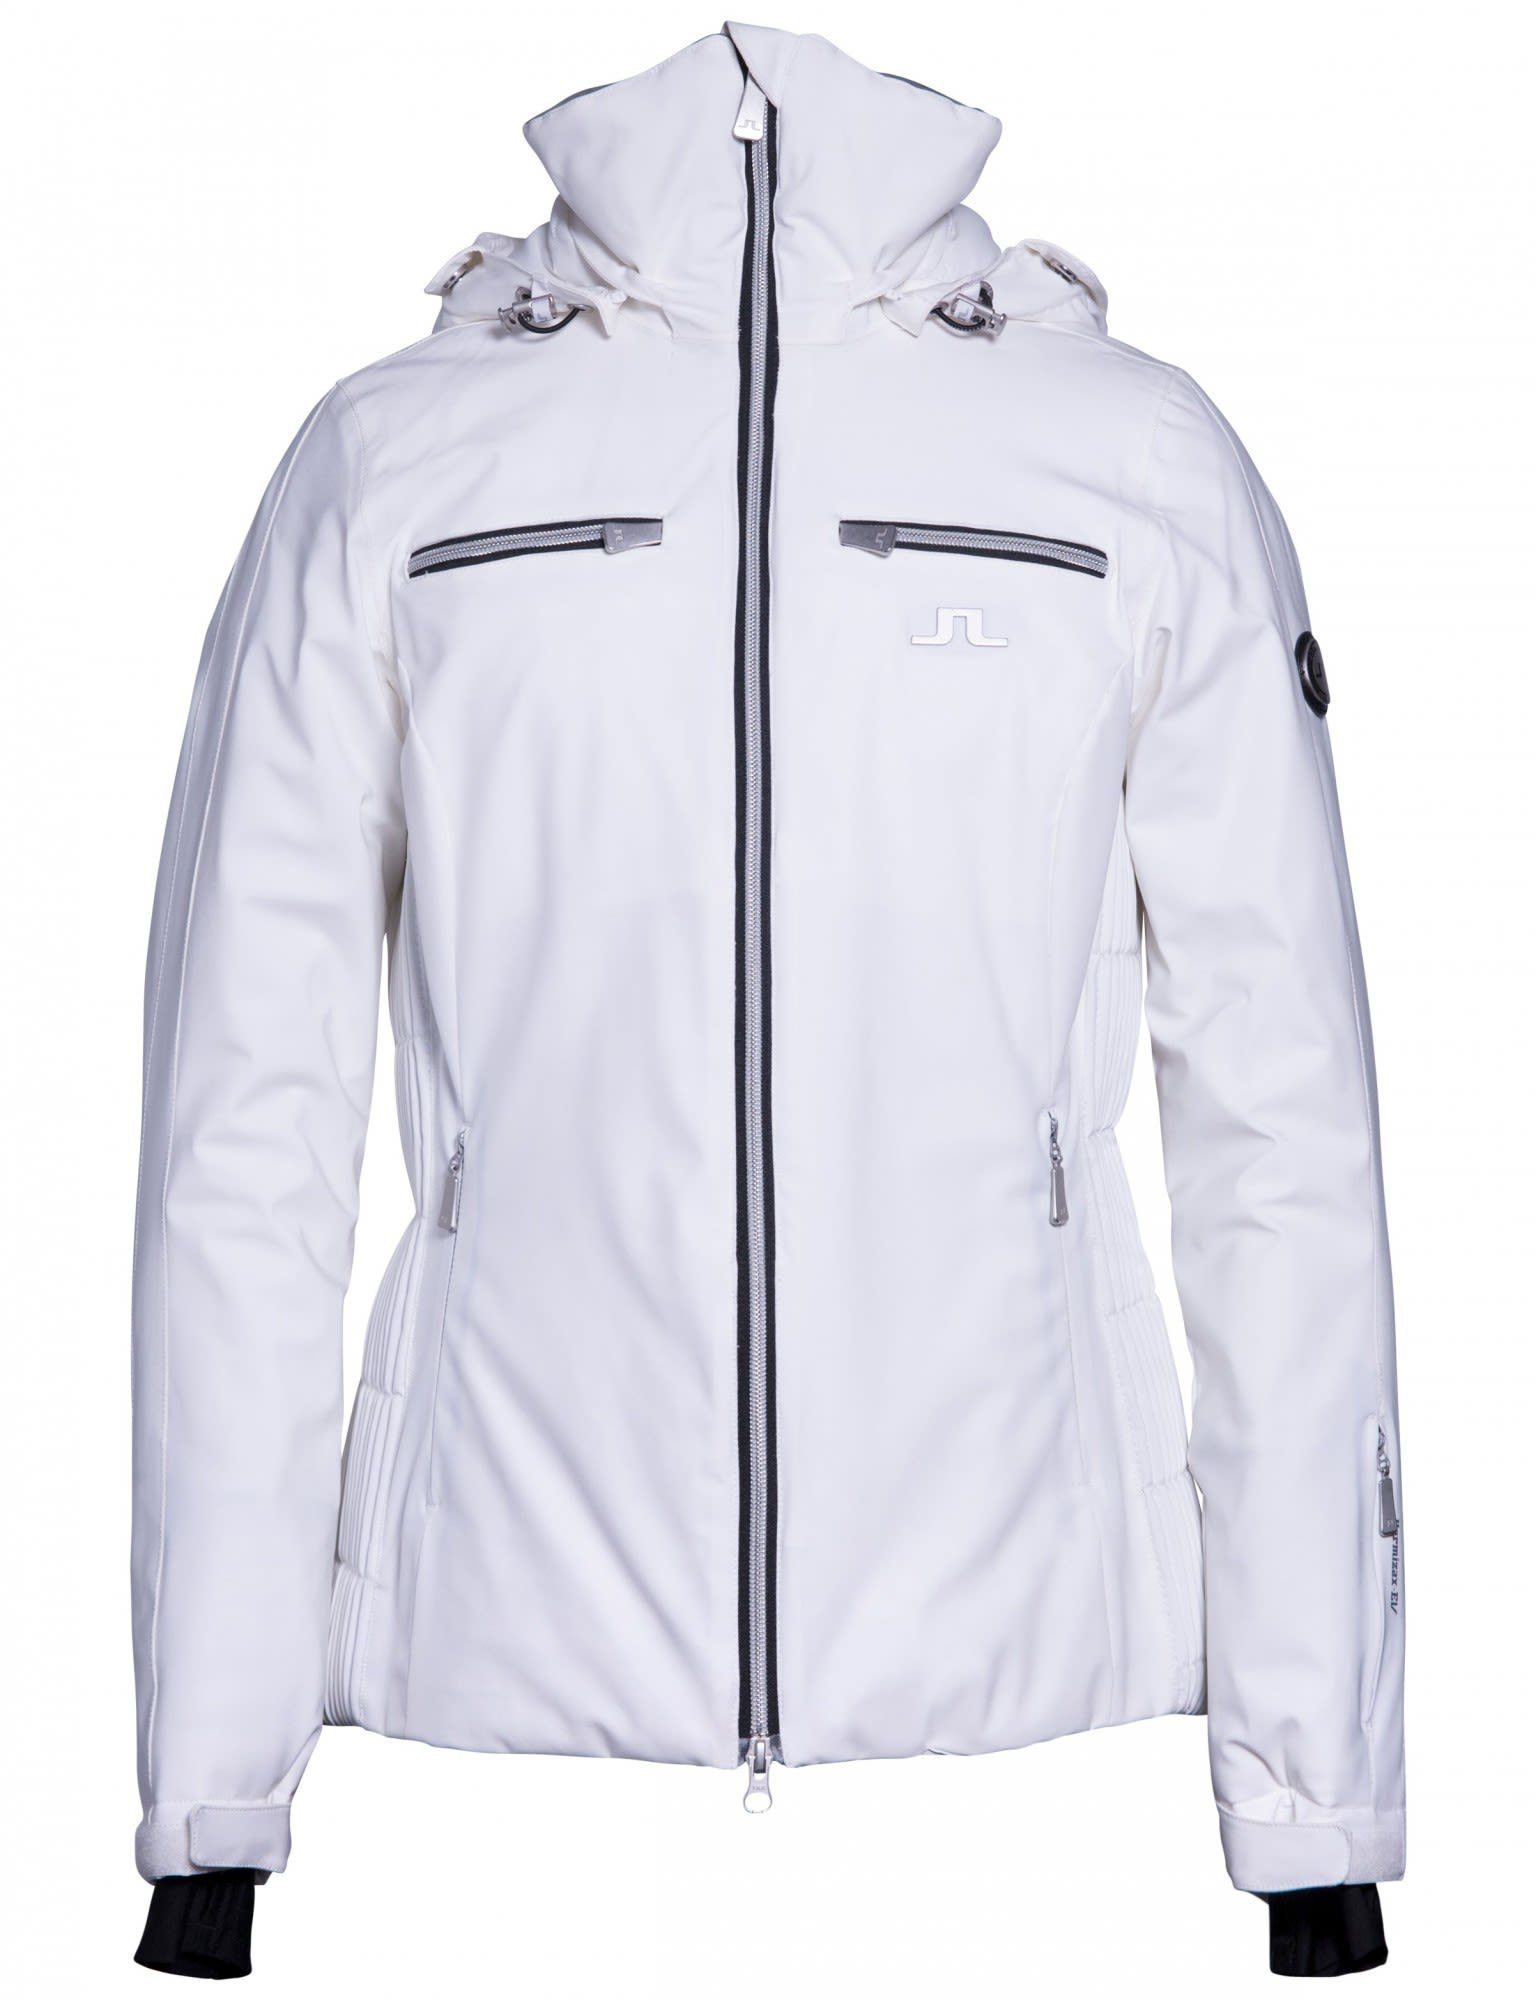 J.LINDEBERG Skijacke Moffit (vorgängermodell) Jacket W J.lindeberg